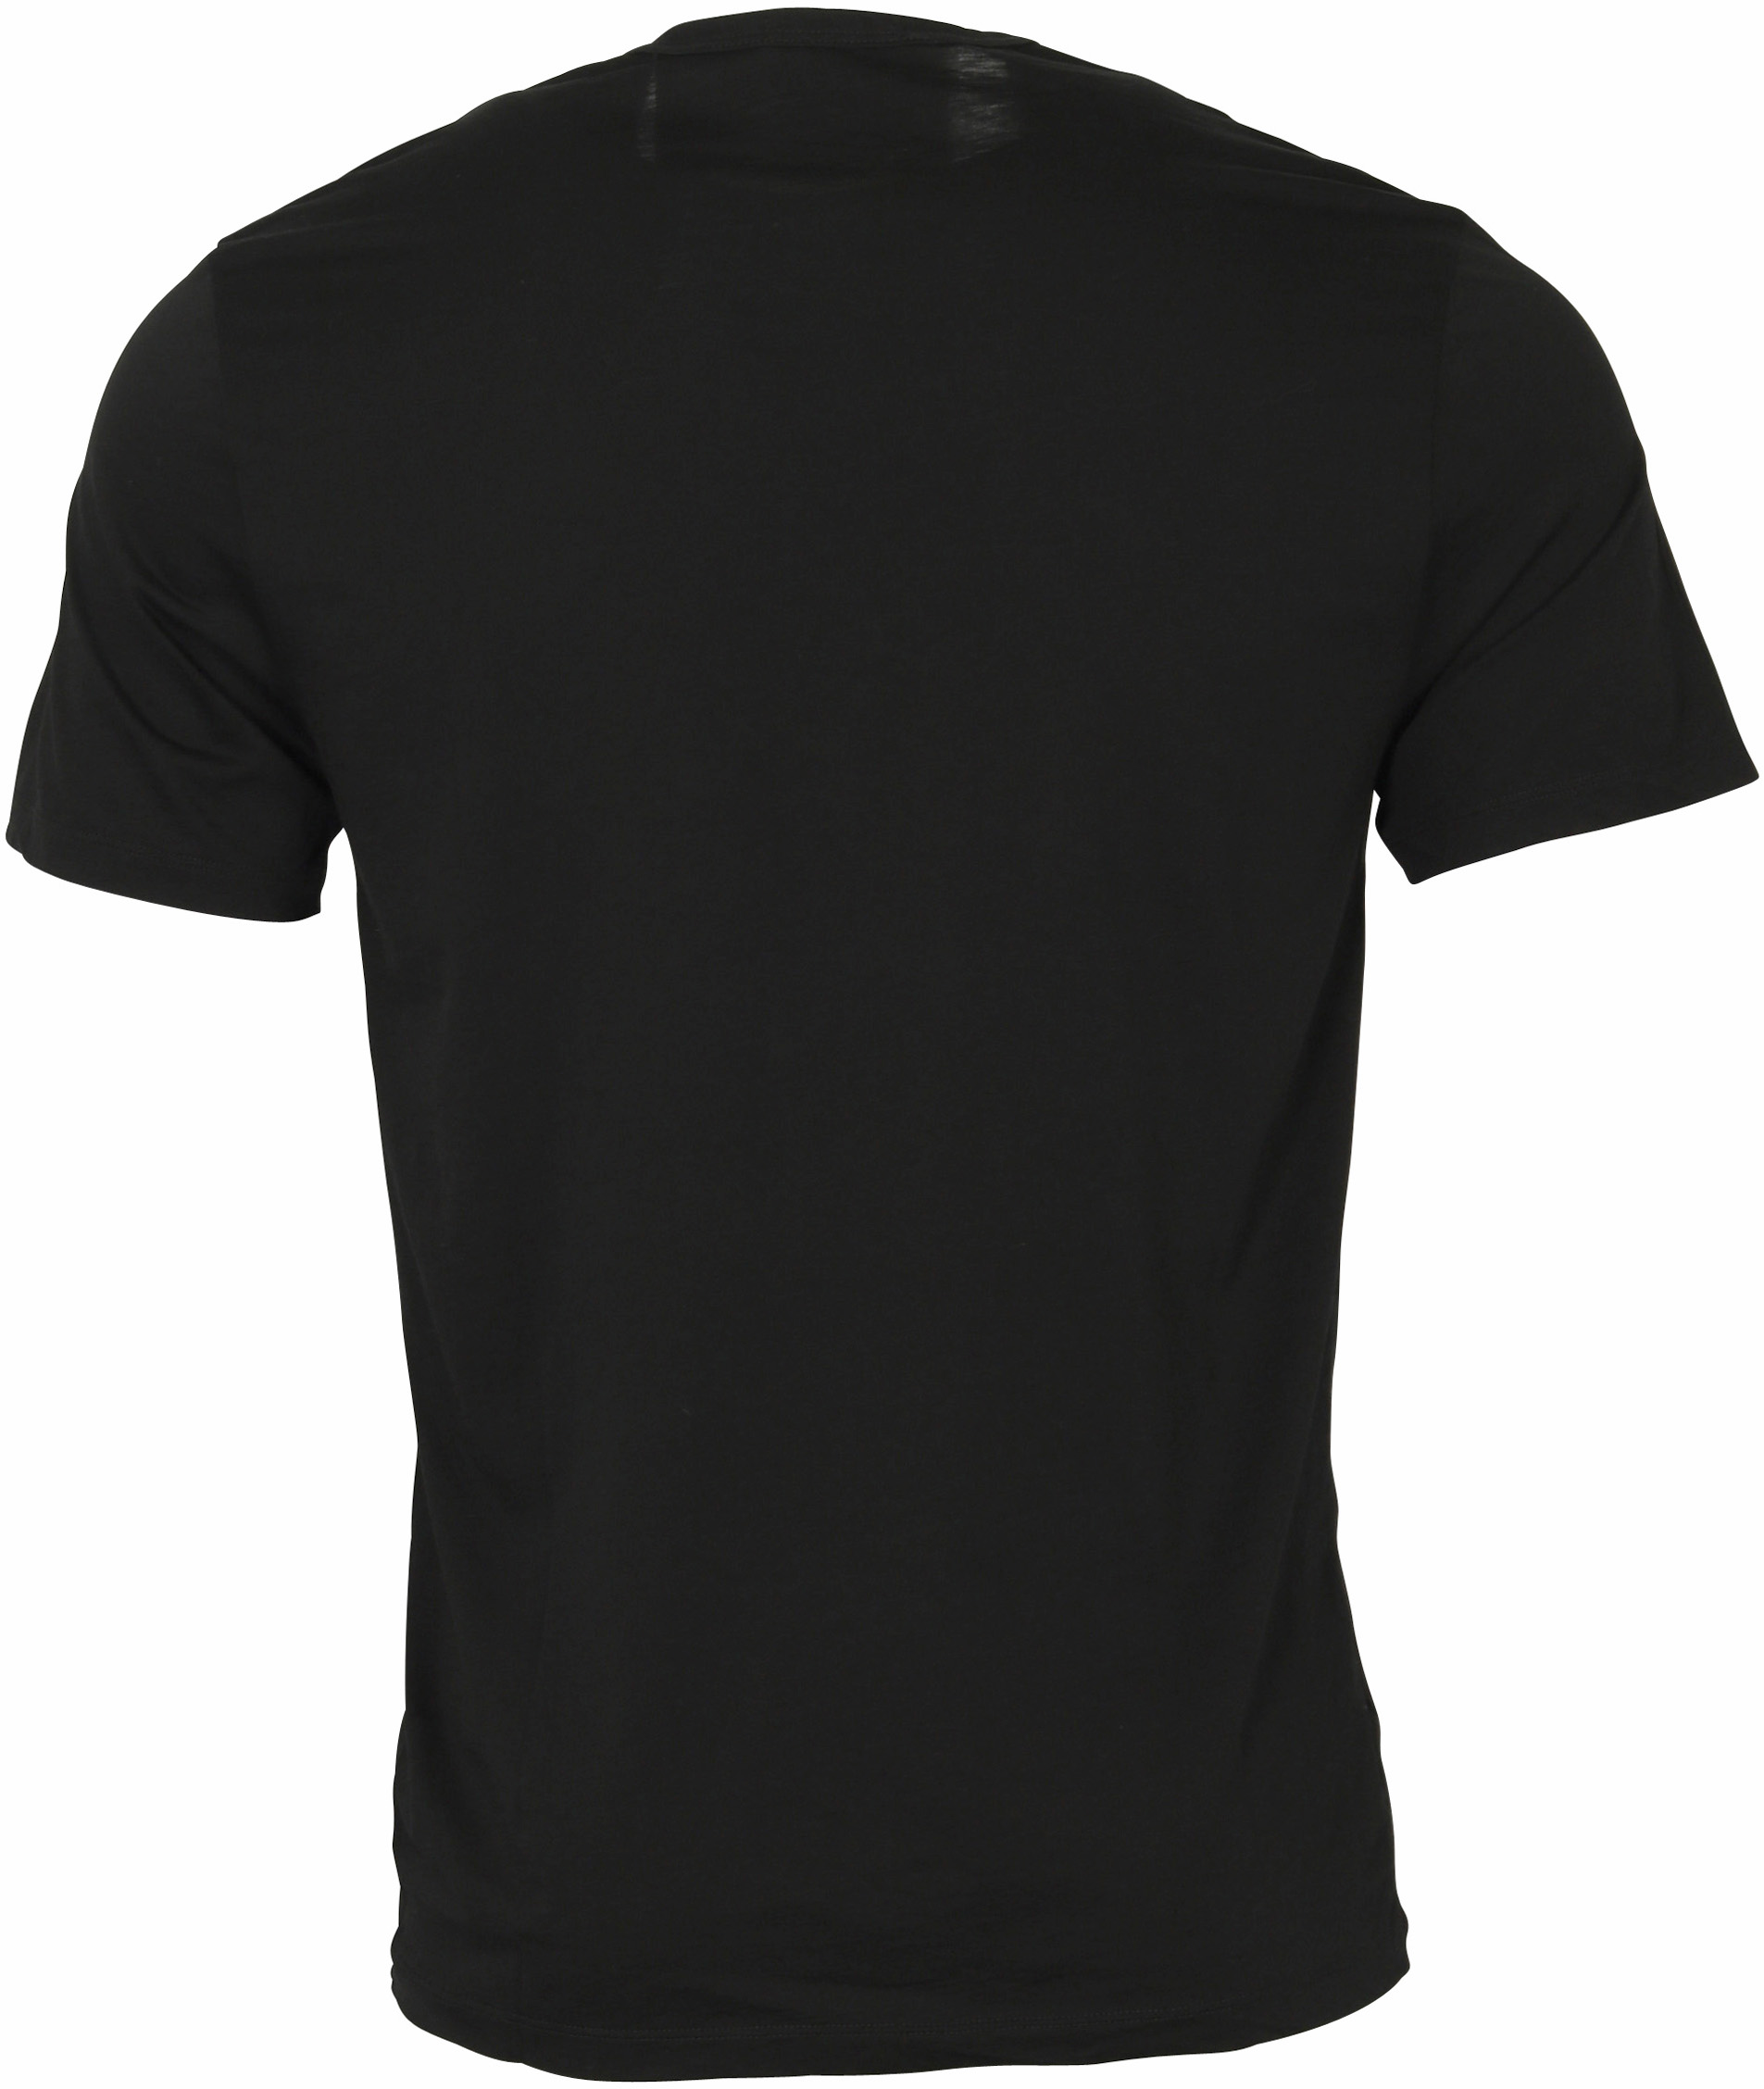 James Perse Cotton Cashmere T-Shirt Black XL